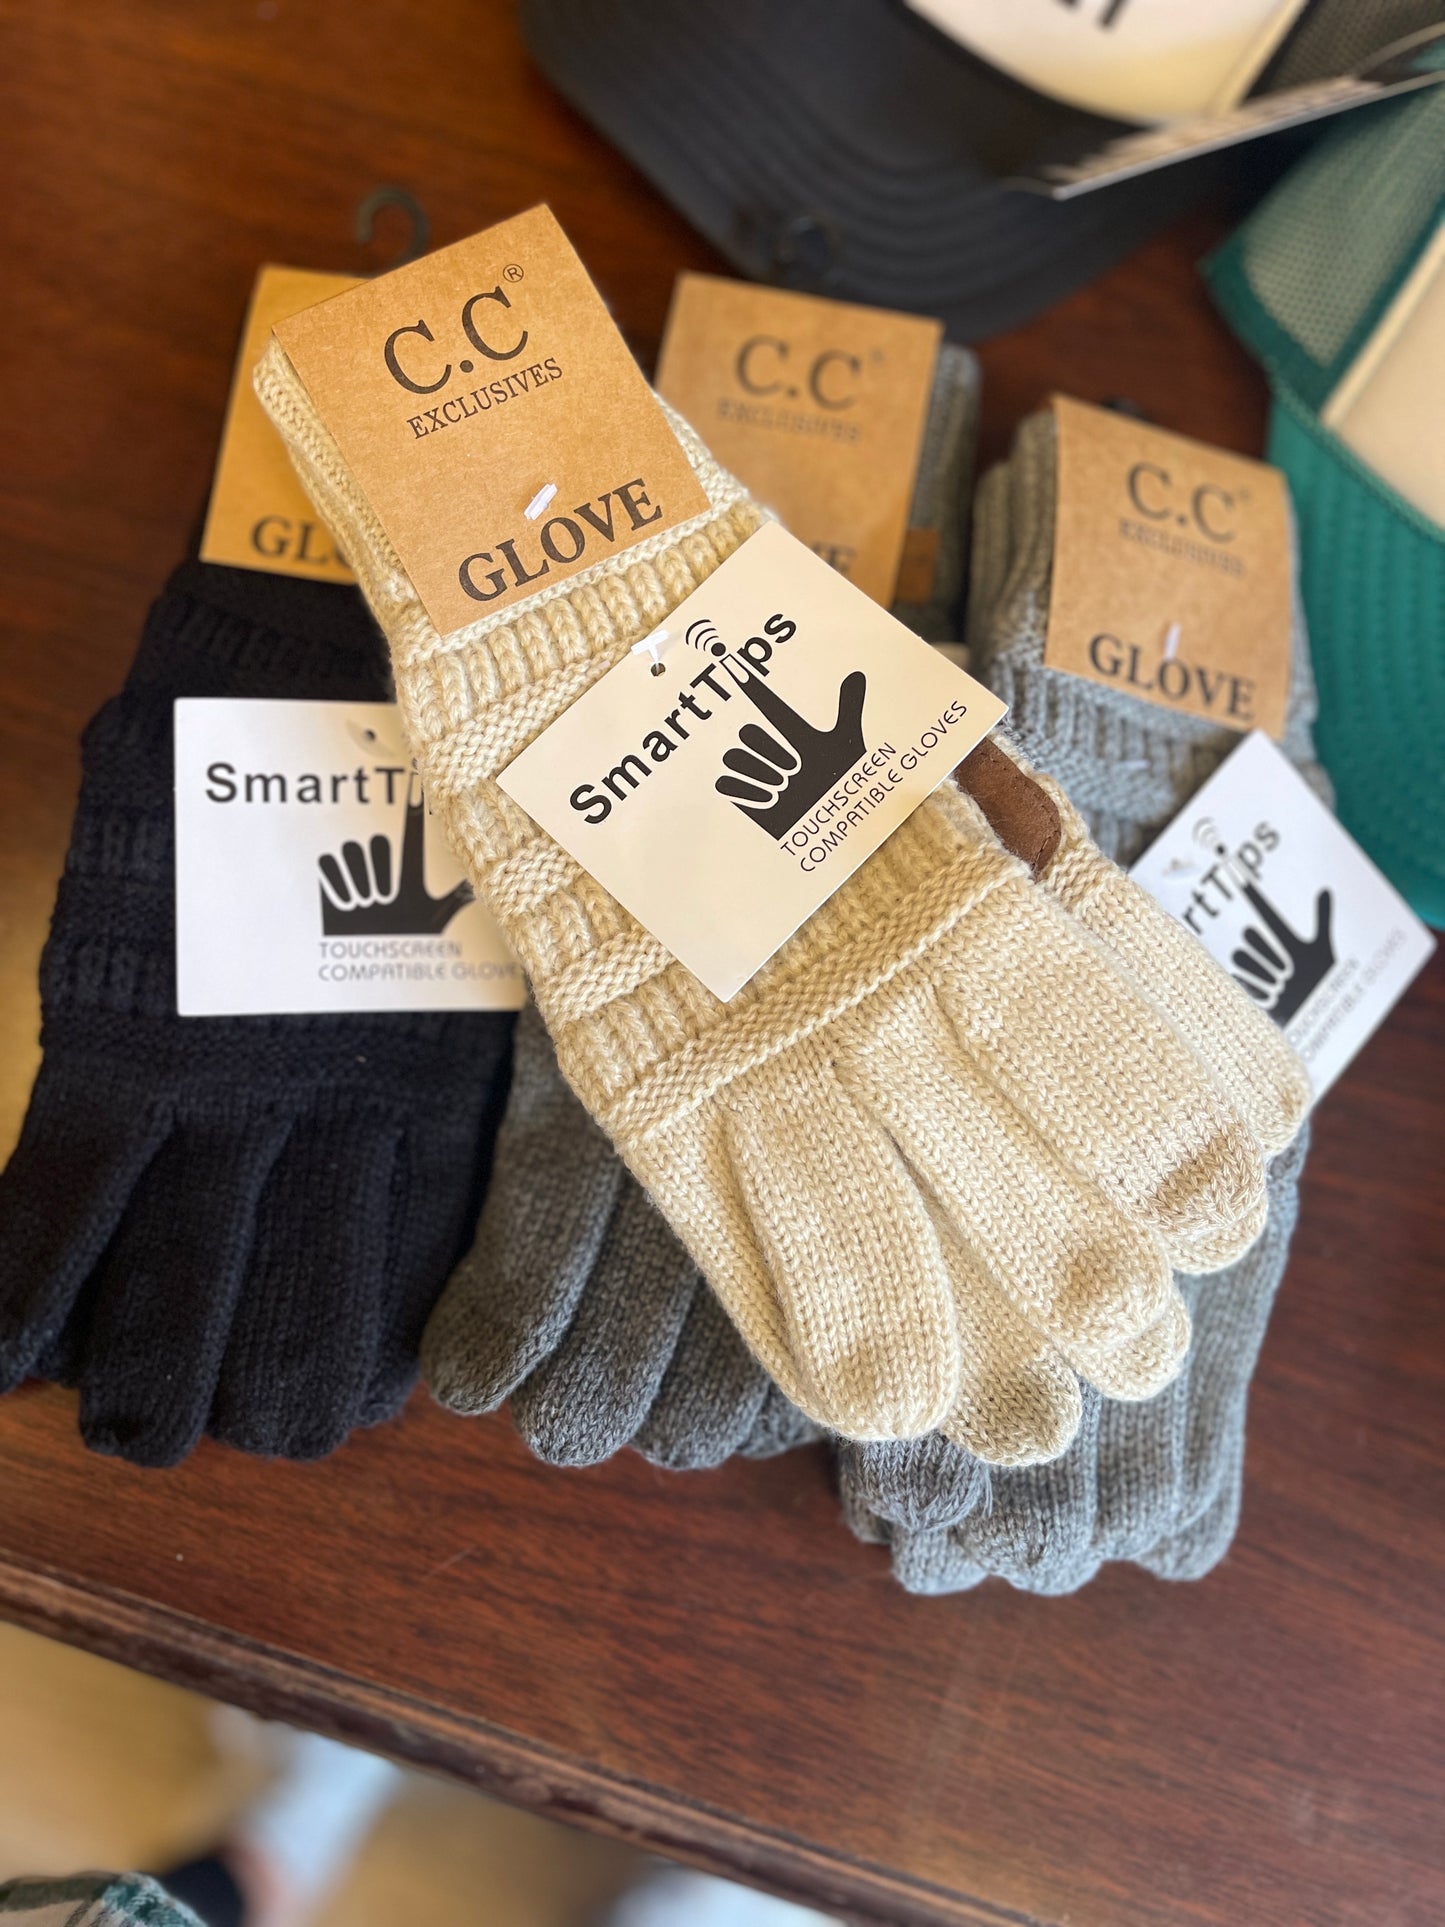 C.c Glove